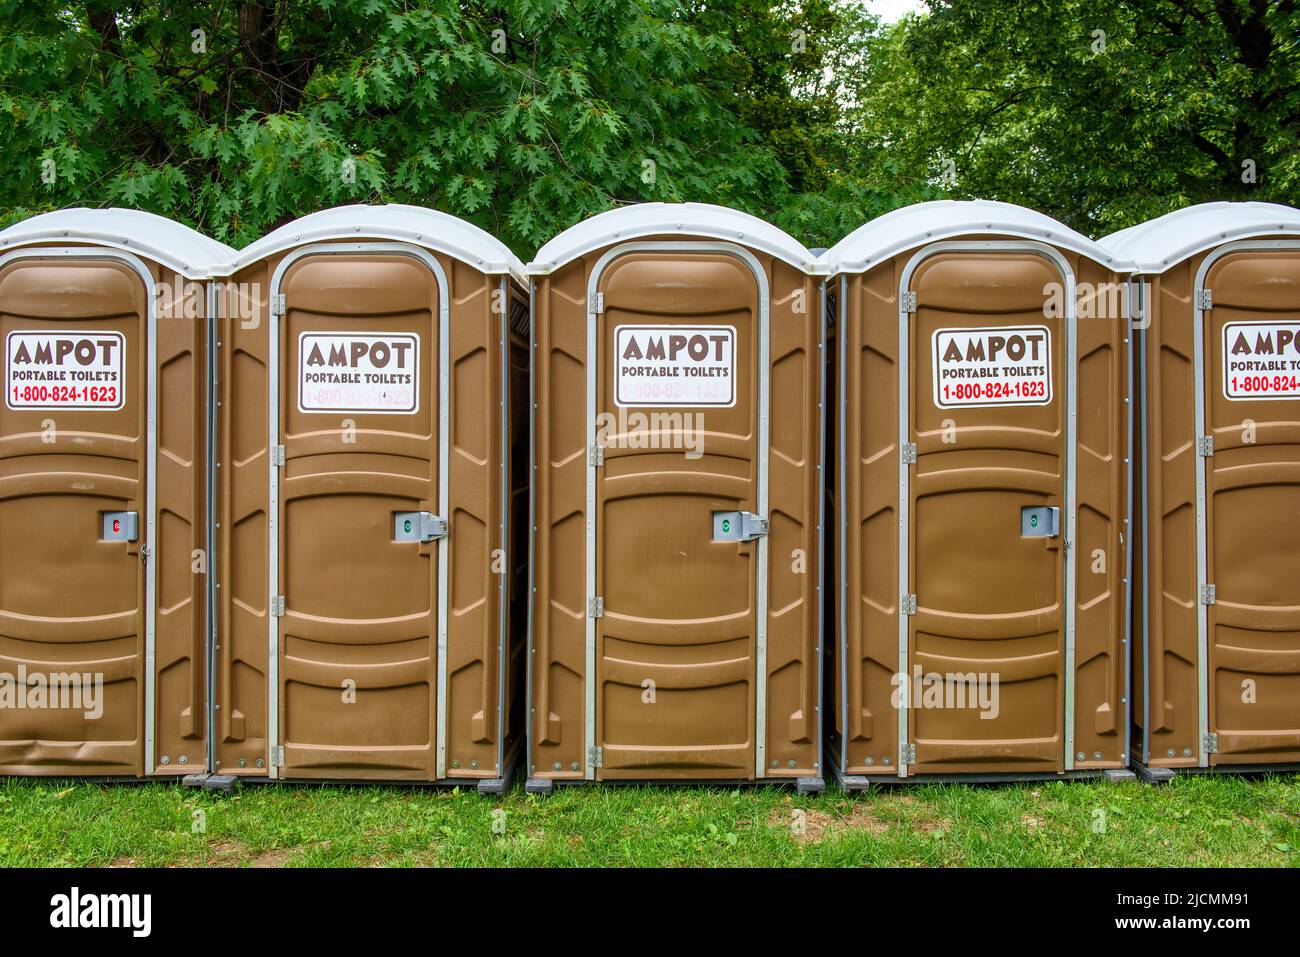 Vue avant d'un groupe de toilettes portables Ampot. Les toilettes publiques servent les gens qui assistent au festival Word on the Street dans le cercle de Queen's Park Banque D'Images